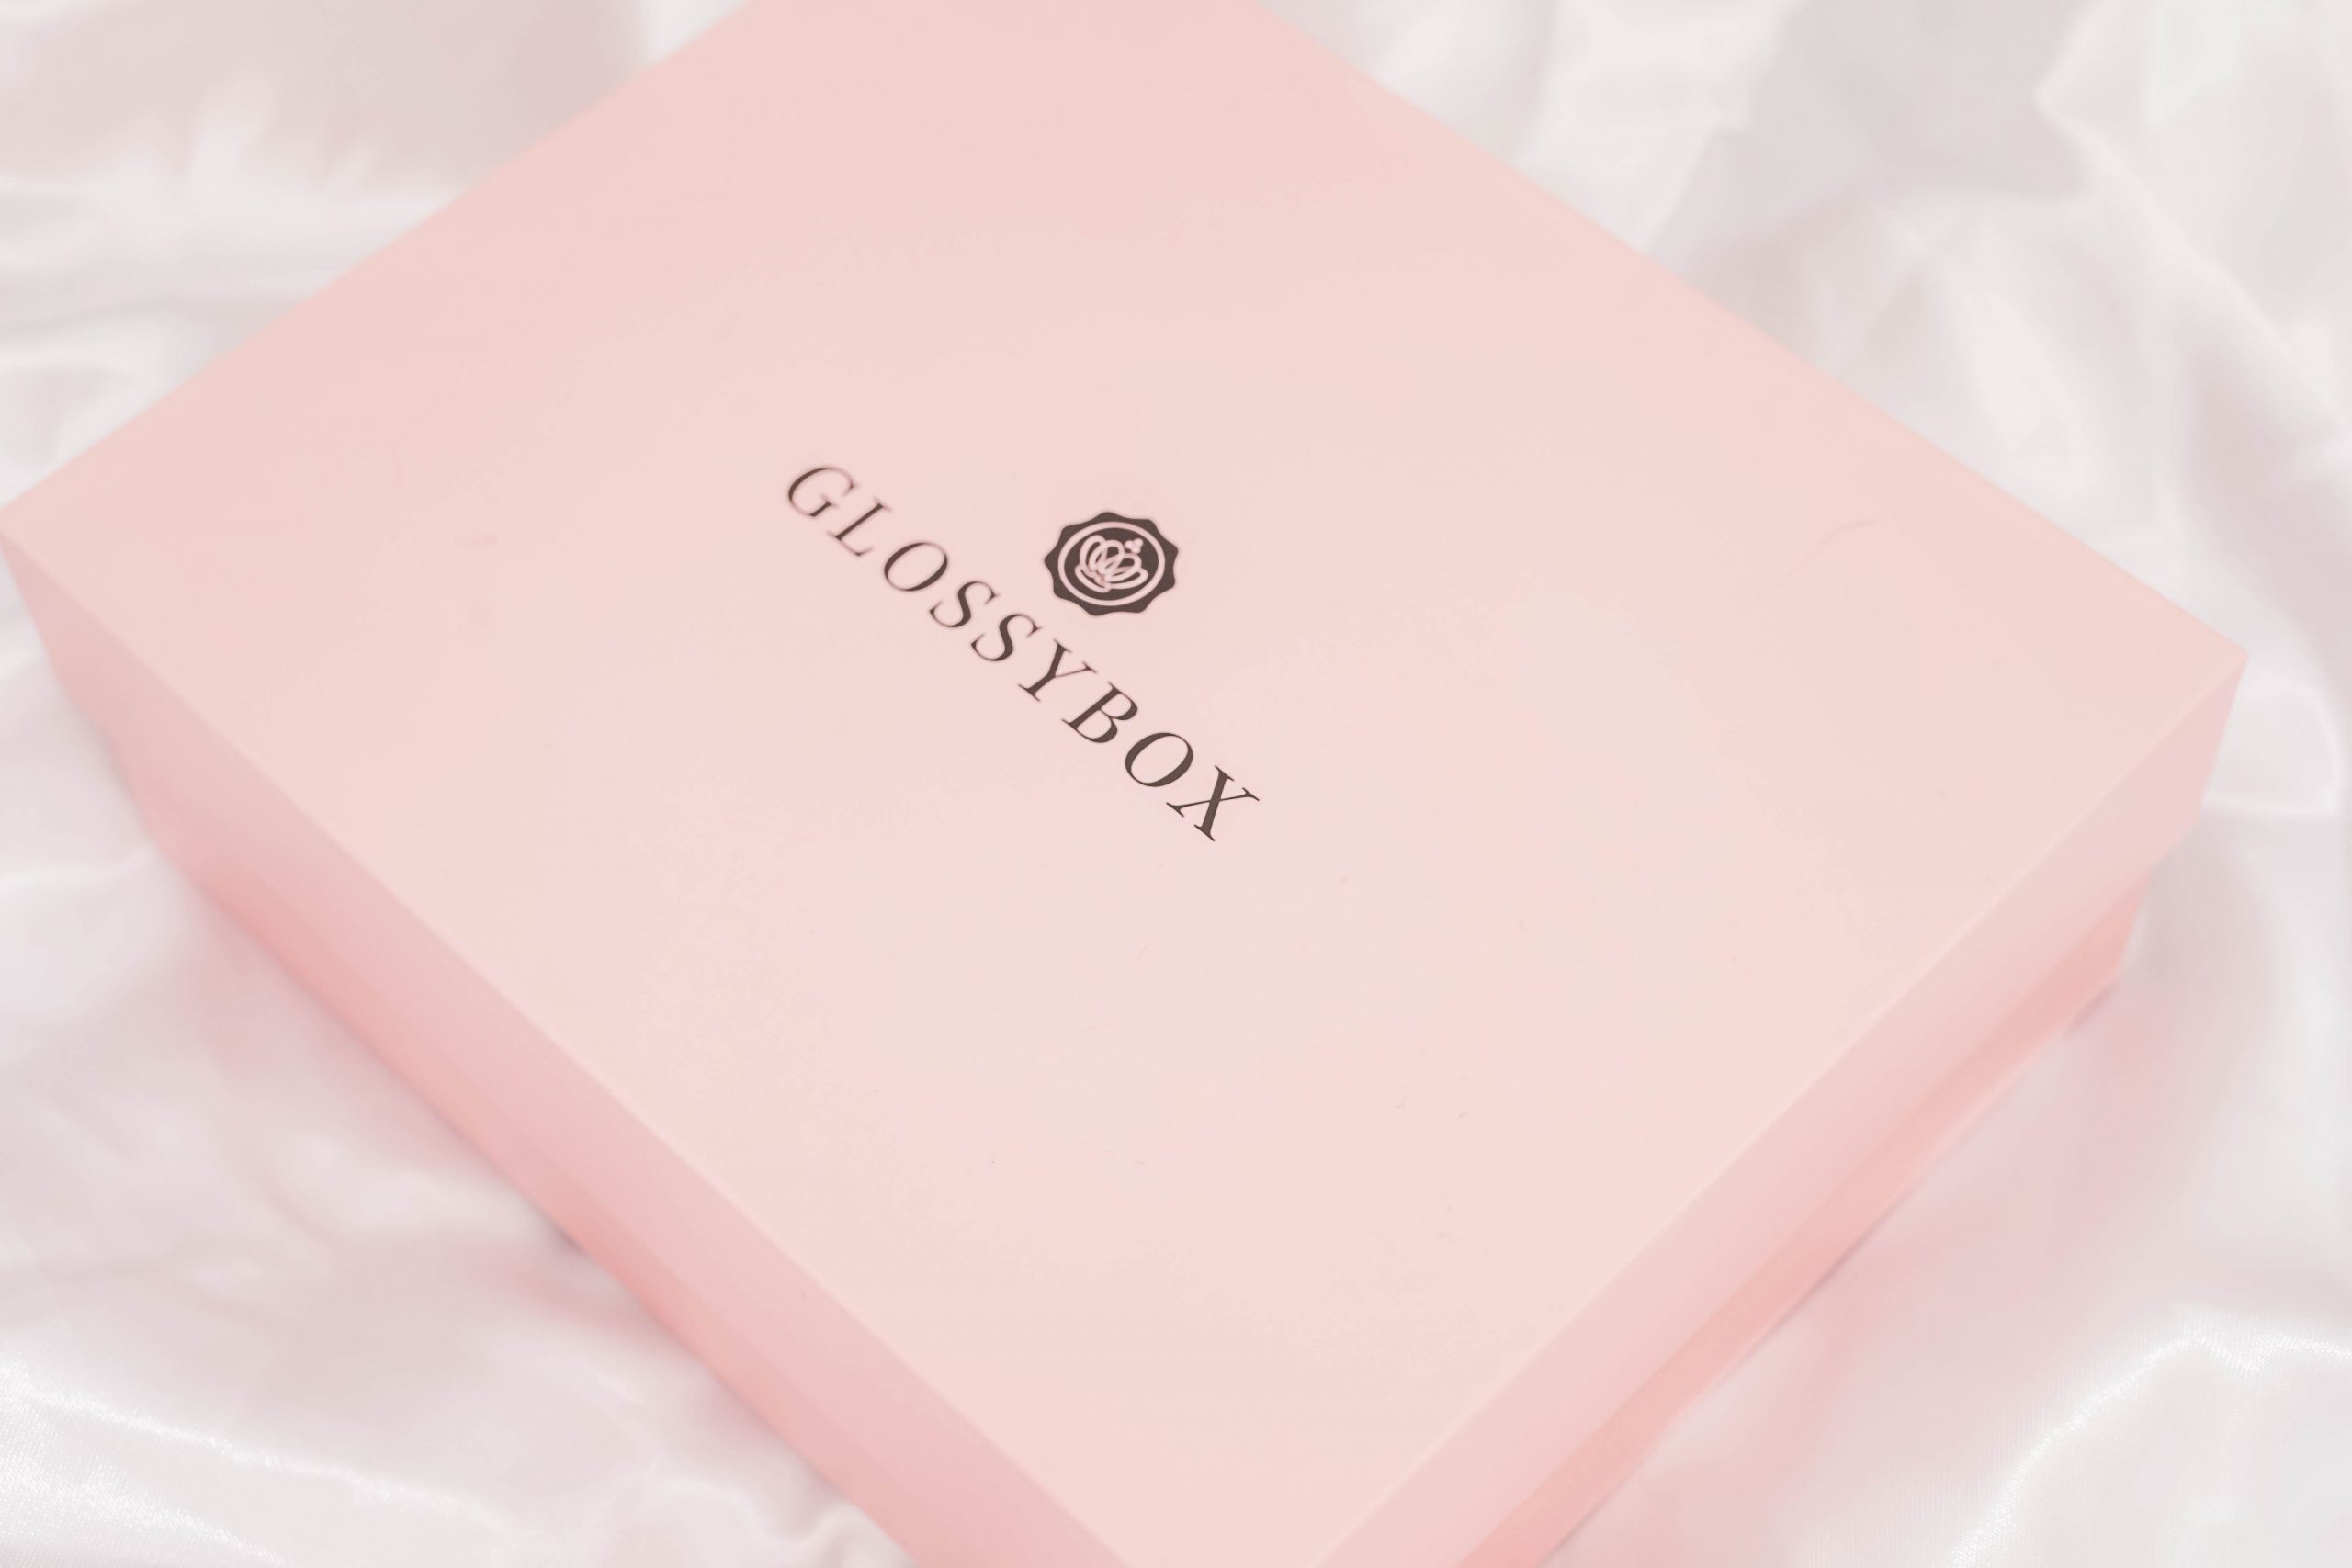 Glossybox November 2020: Make-up and Magic